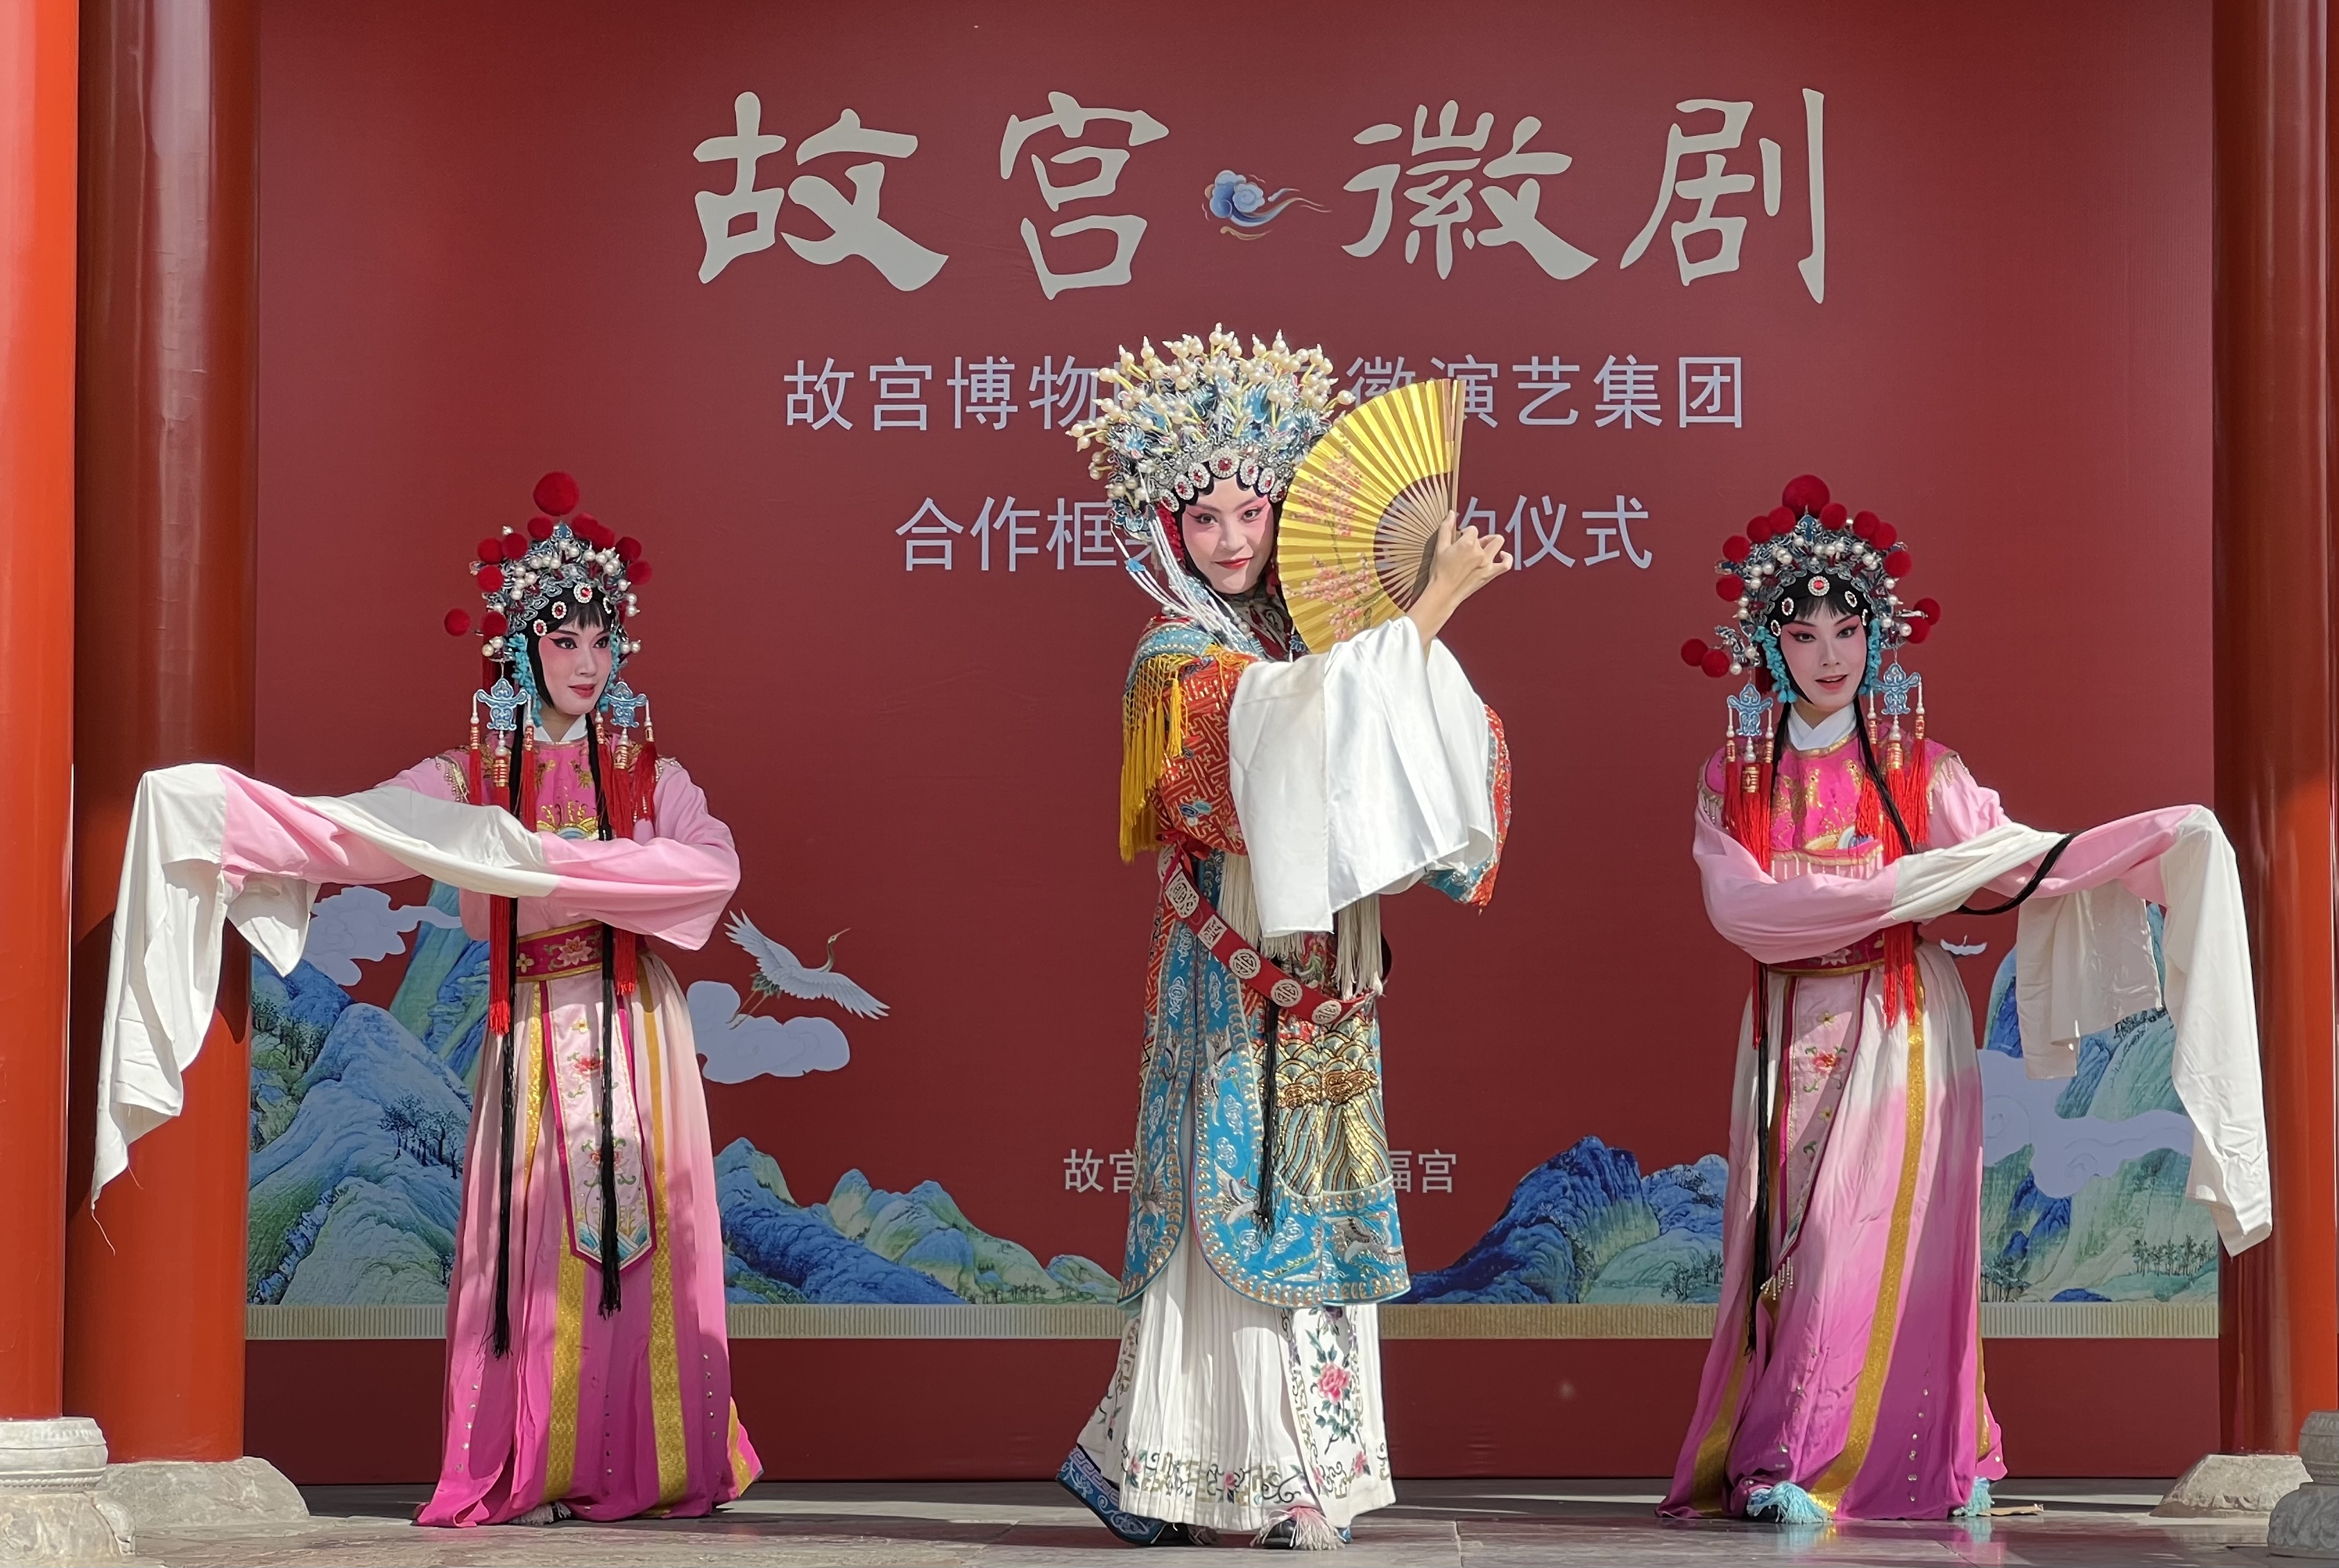 故宫博物院与安徽演艺集团合作 让古老戏曲“火”起来